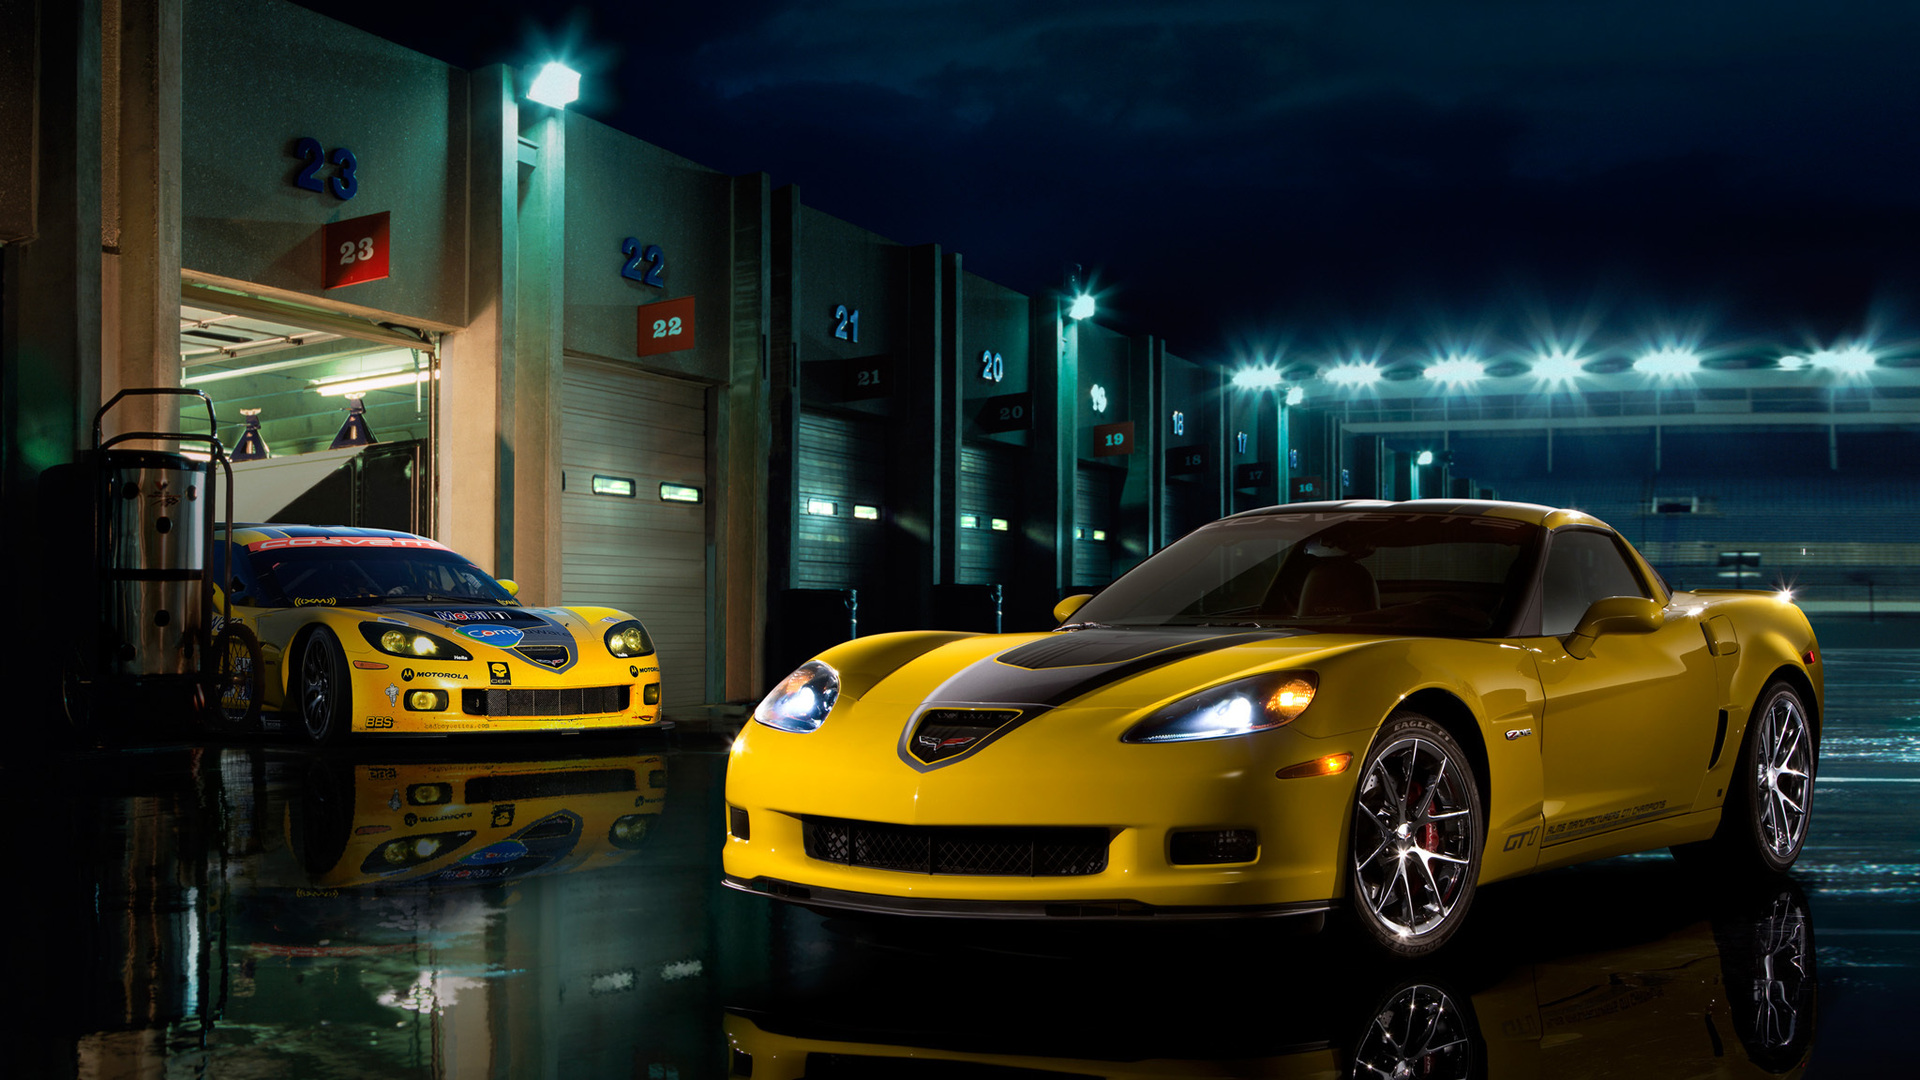 Желтый Chevrolet-Corvette-Z06 / Шевроле Корвет-З06 стоит у боксов